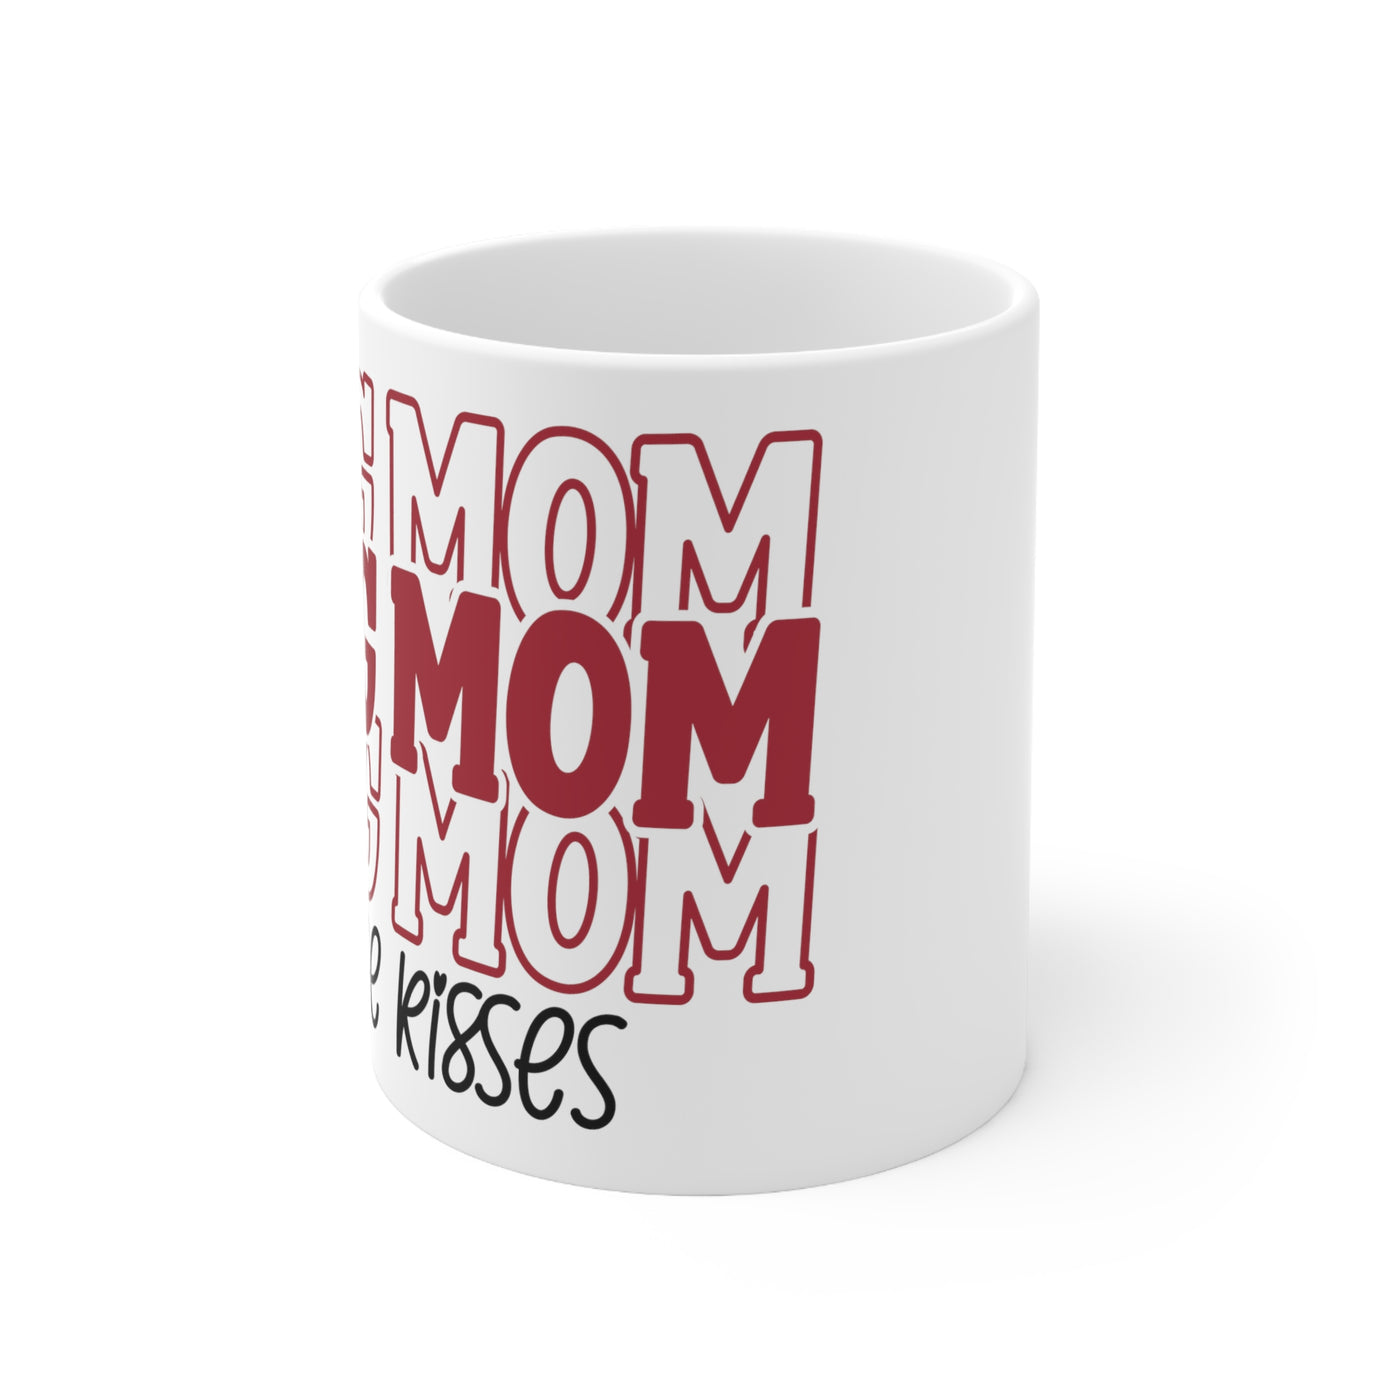 Dog Mom Free Kisses Ceramic Mug